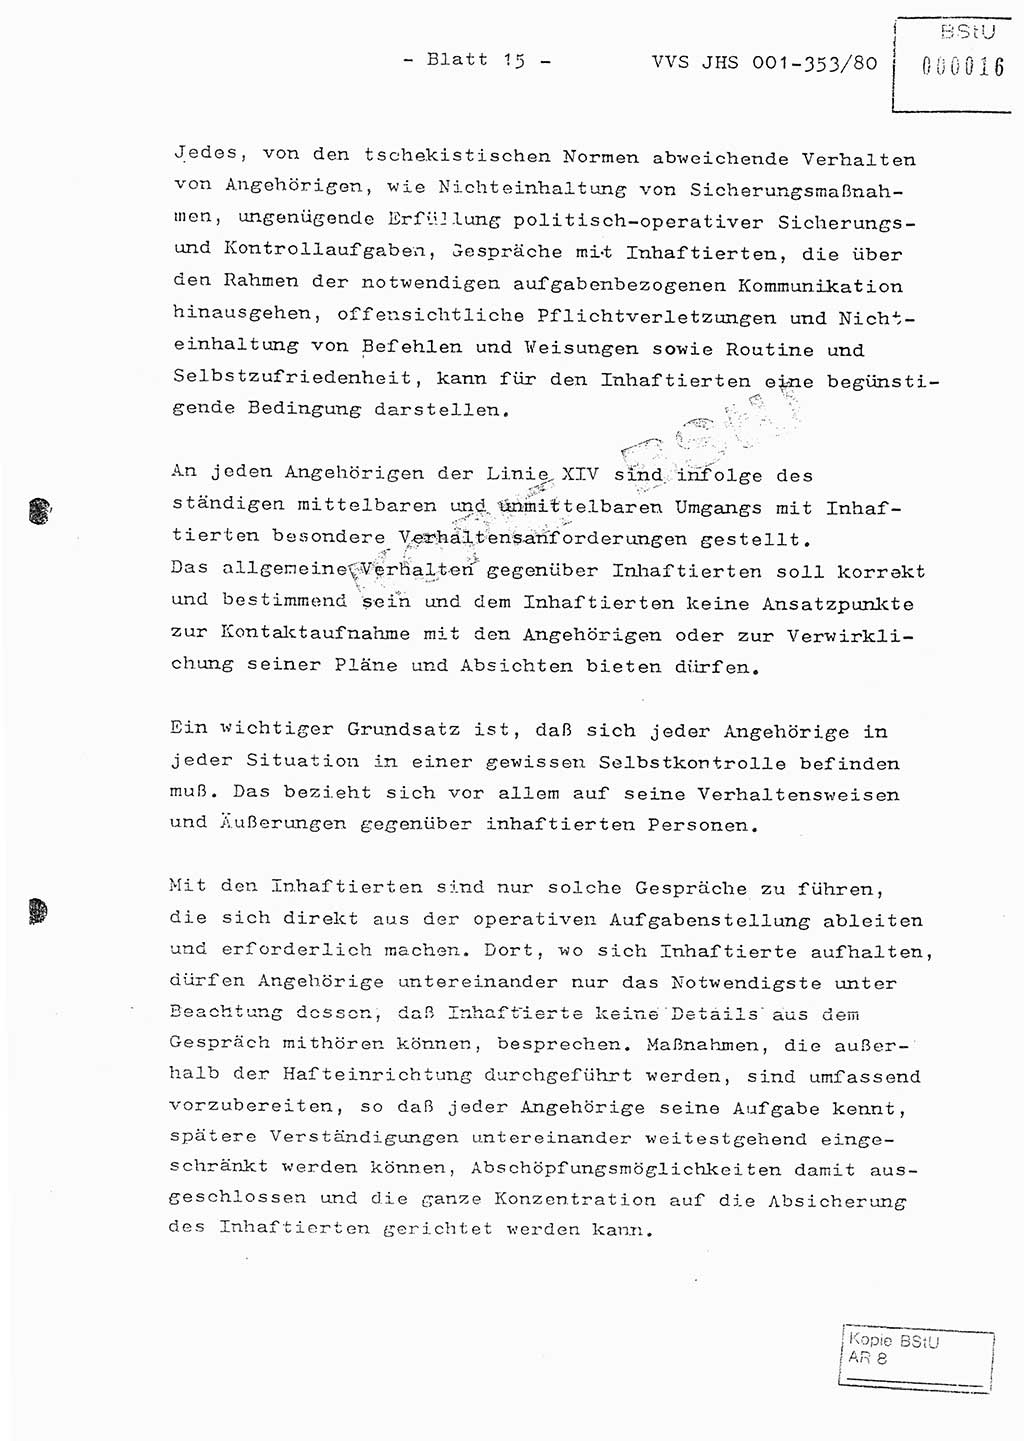 Diplomarbeit Hauptmann Joachim Klaumünzner (Abt. ⅩⅣ), Ministerium für Staatssicherheit (MfS) [Deutsche Demokratische Republik (DDR)], Juristische Hochschule (JHS), Vertrauliche Verschlußsache (VVS) o001-353/80, Potsdam 1980, Blatt 15 (Dipl.-Arb. MfS DDR JHS VVS o001-353/80 1980, Bl. 15)